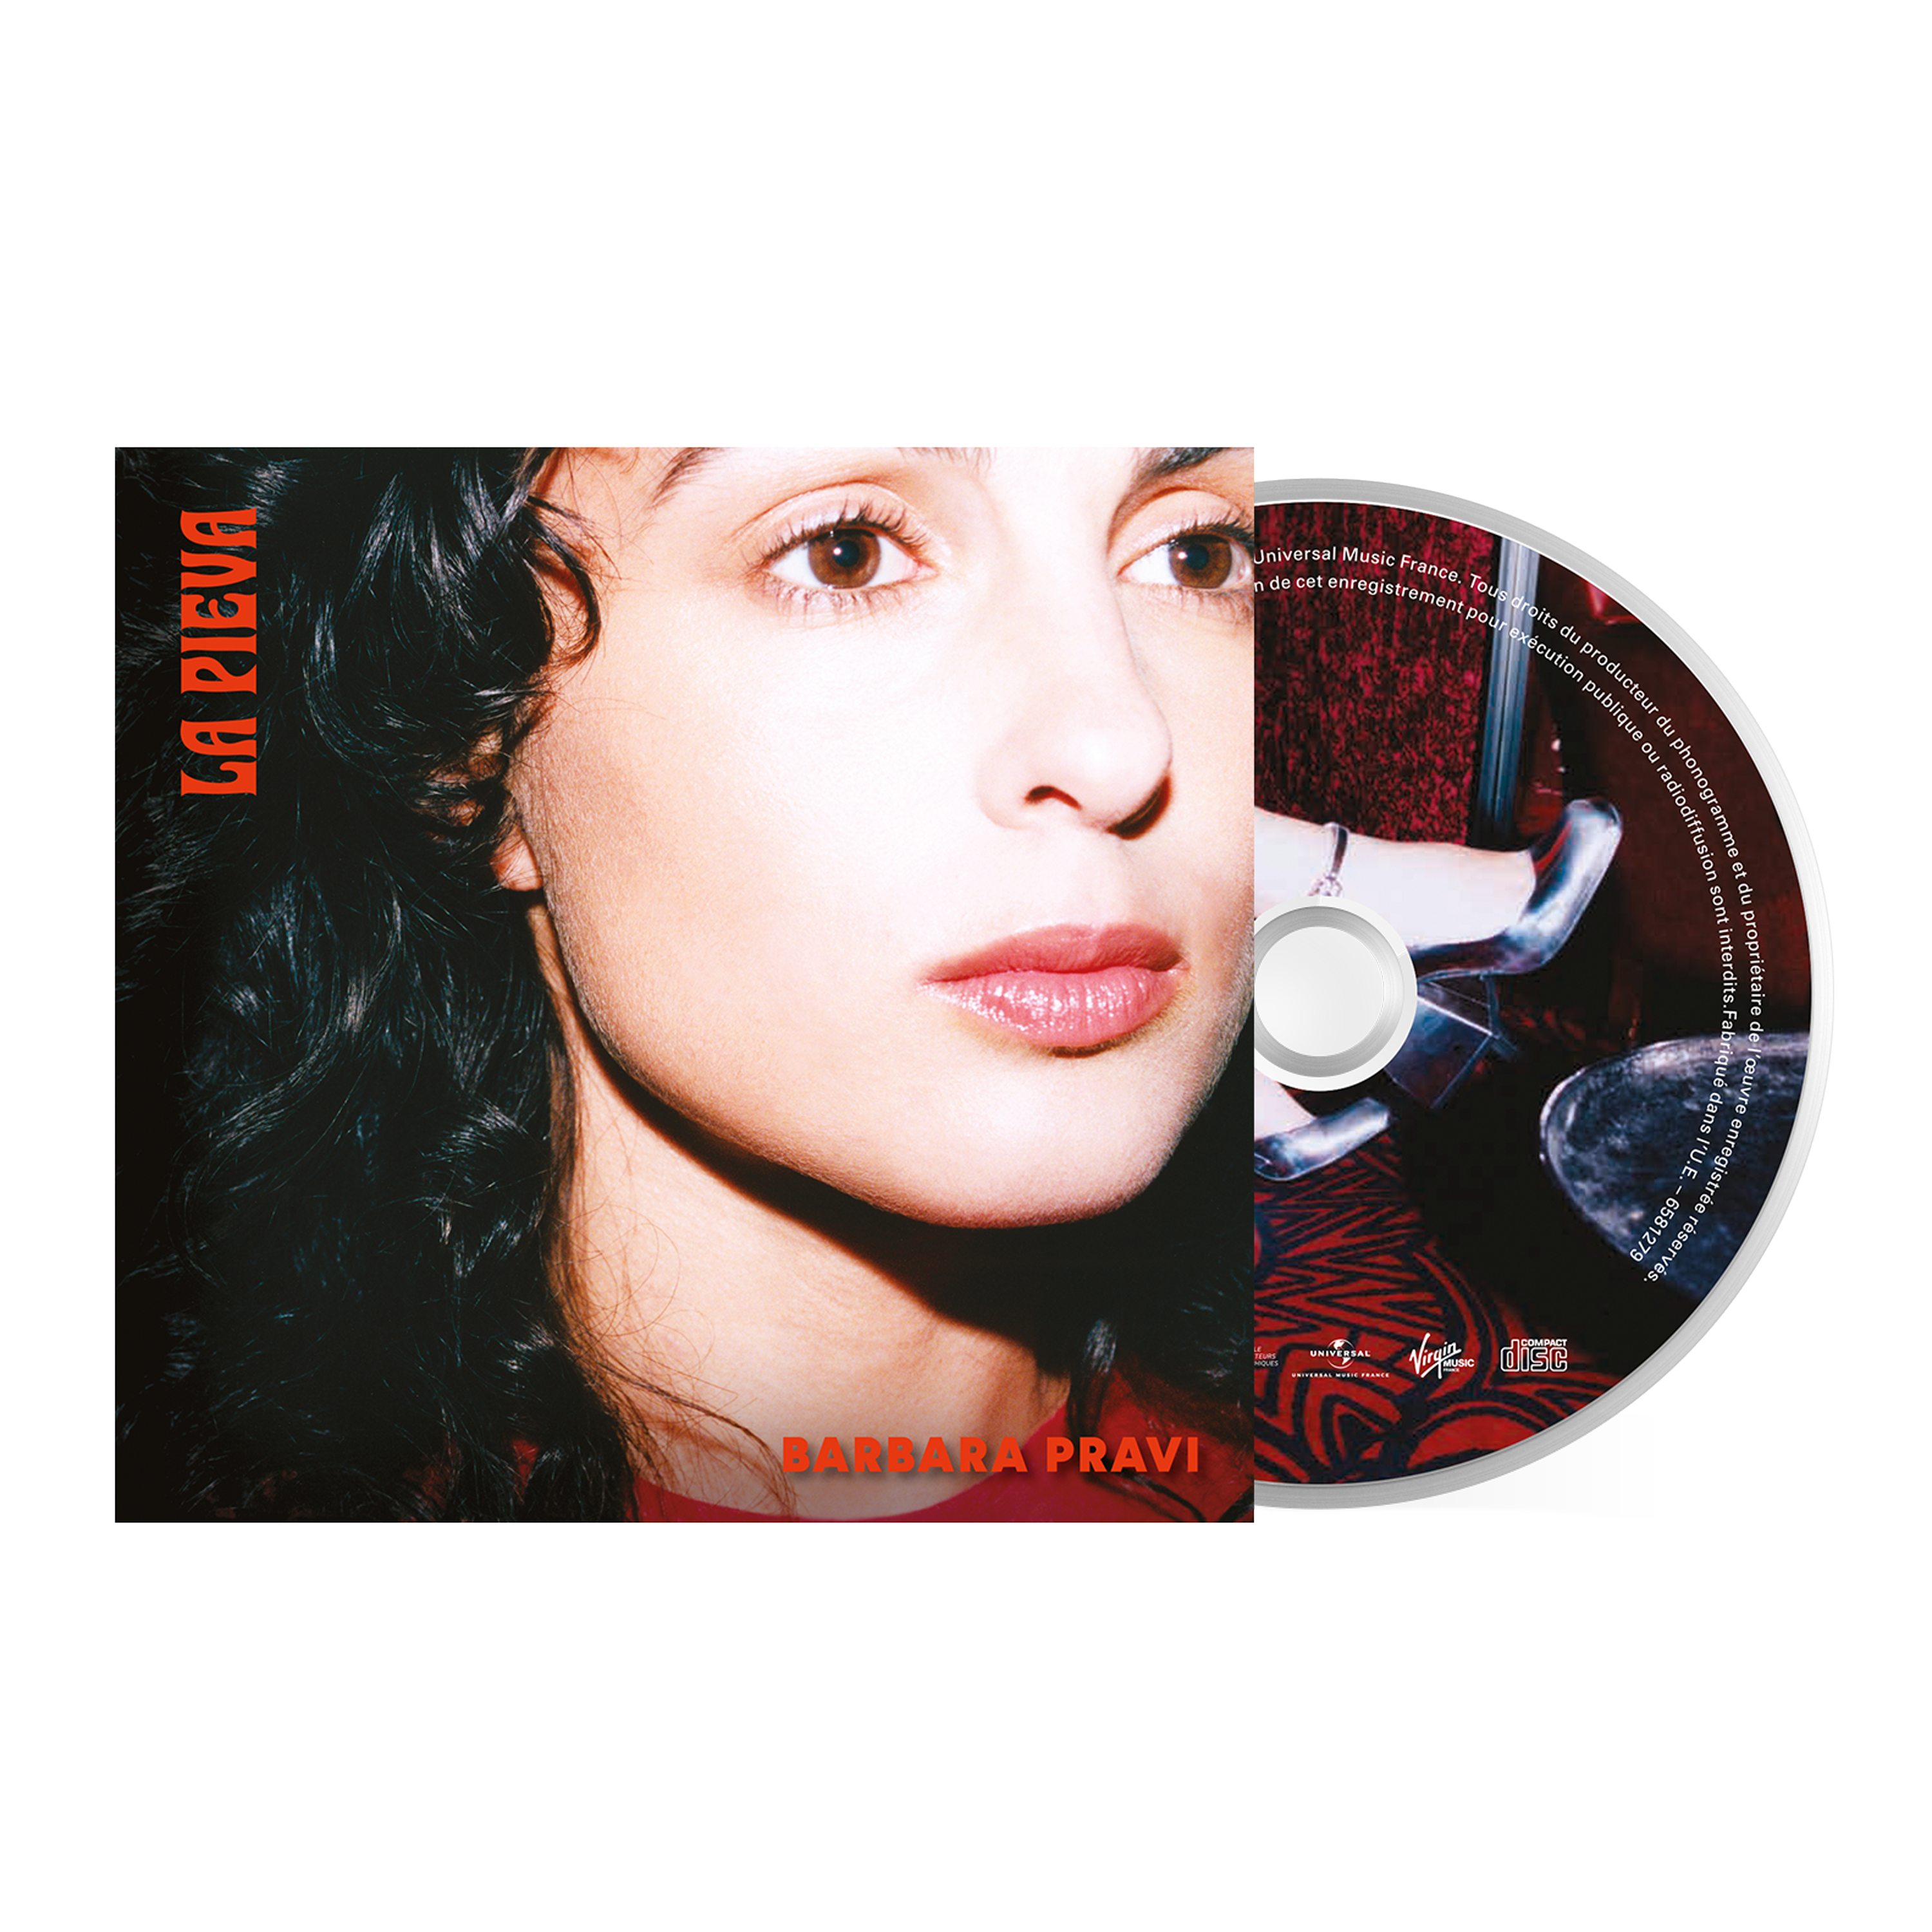 La Pieva - CD dédicacé (édition limitée)